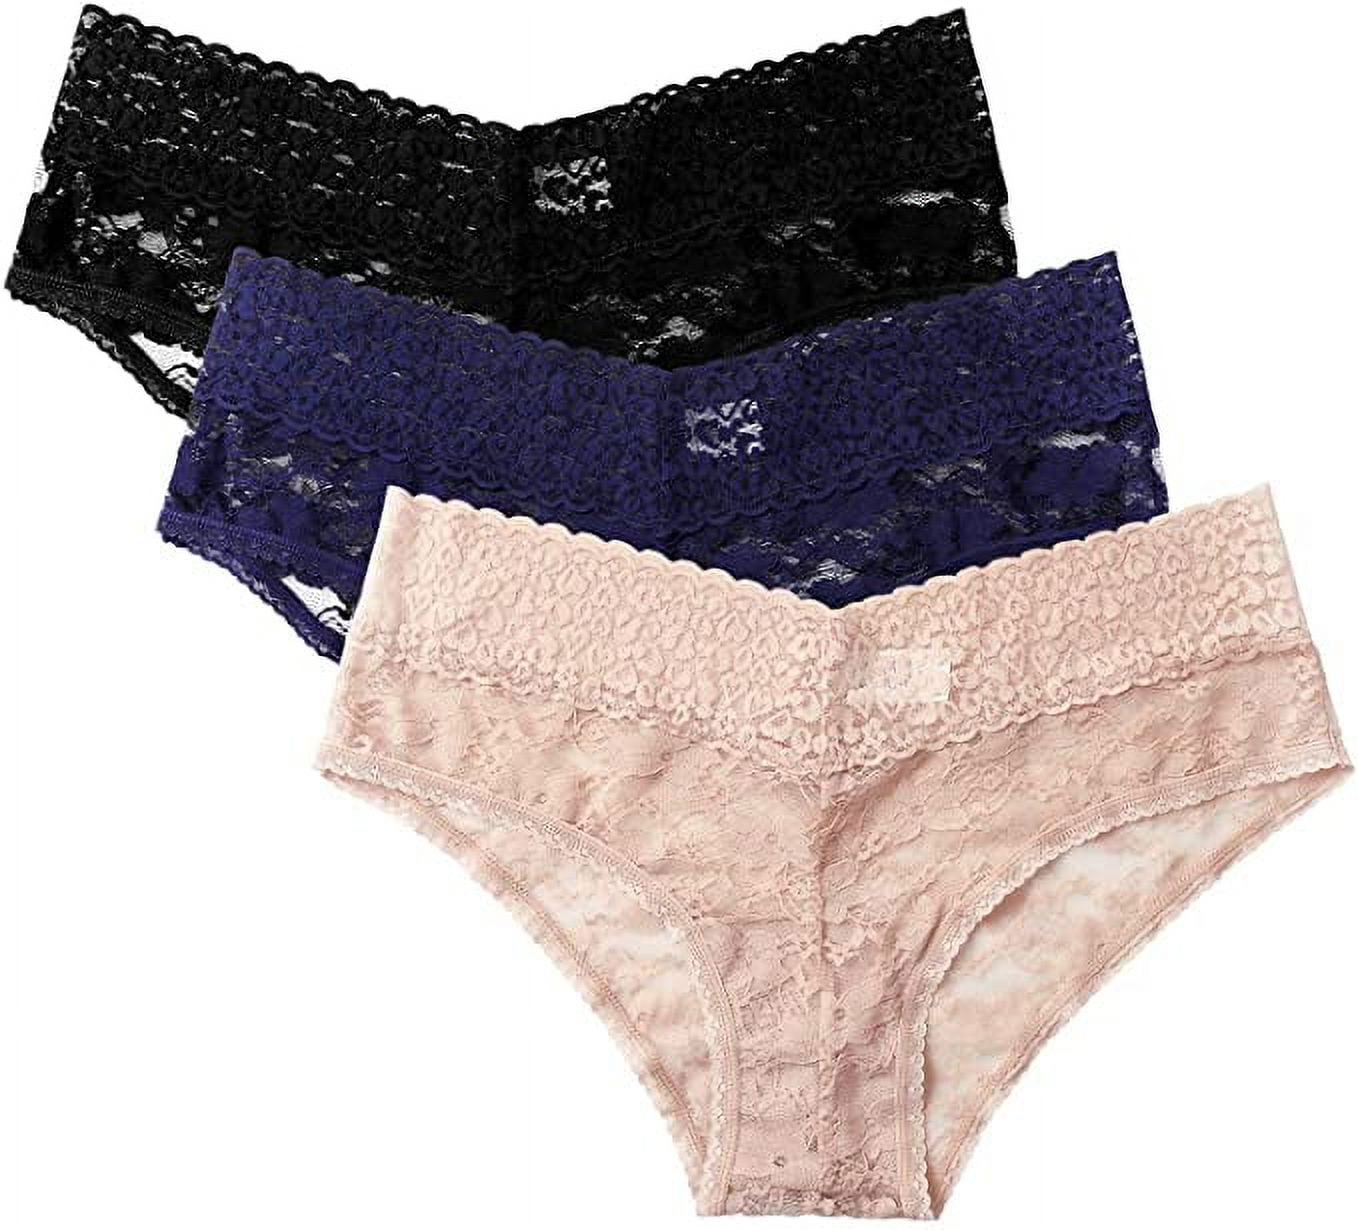 Women' Cotton Stretch Comfort Hipter Underwear - Auden™ Black XXL